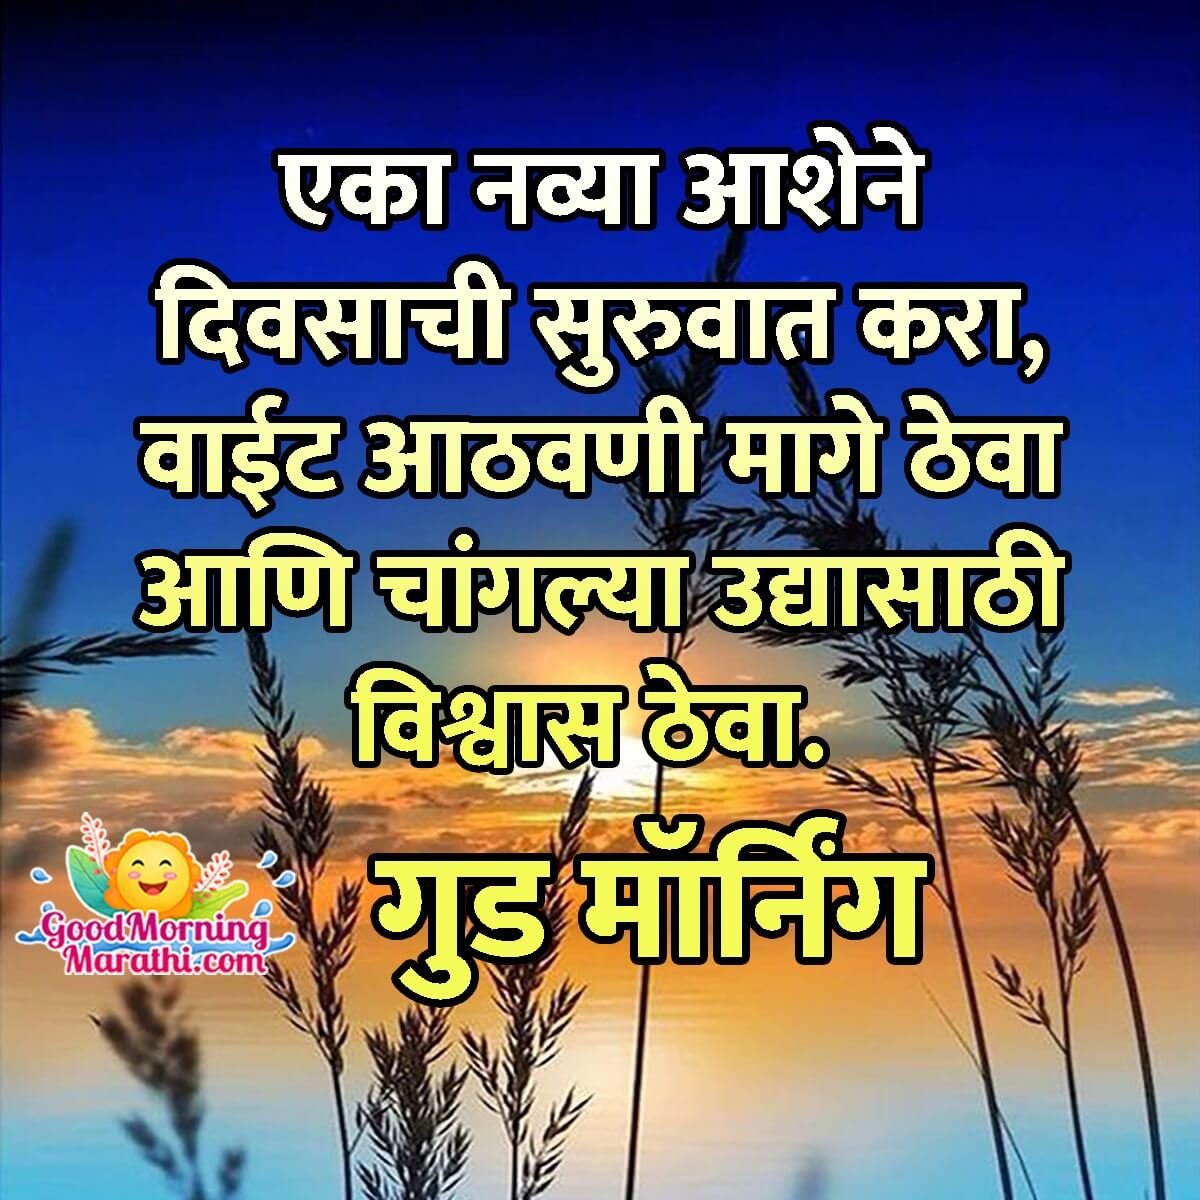 Good Morning New Day Marathi Message